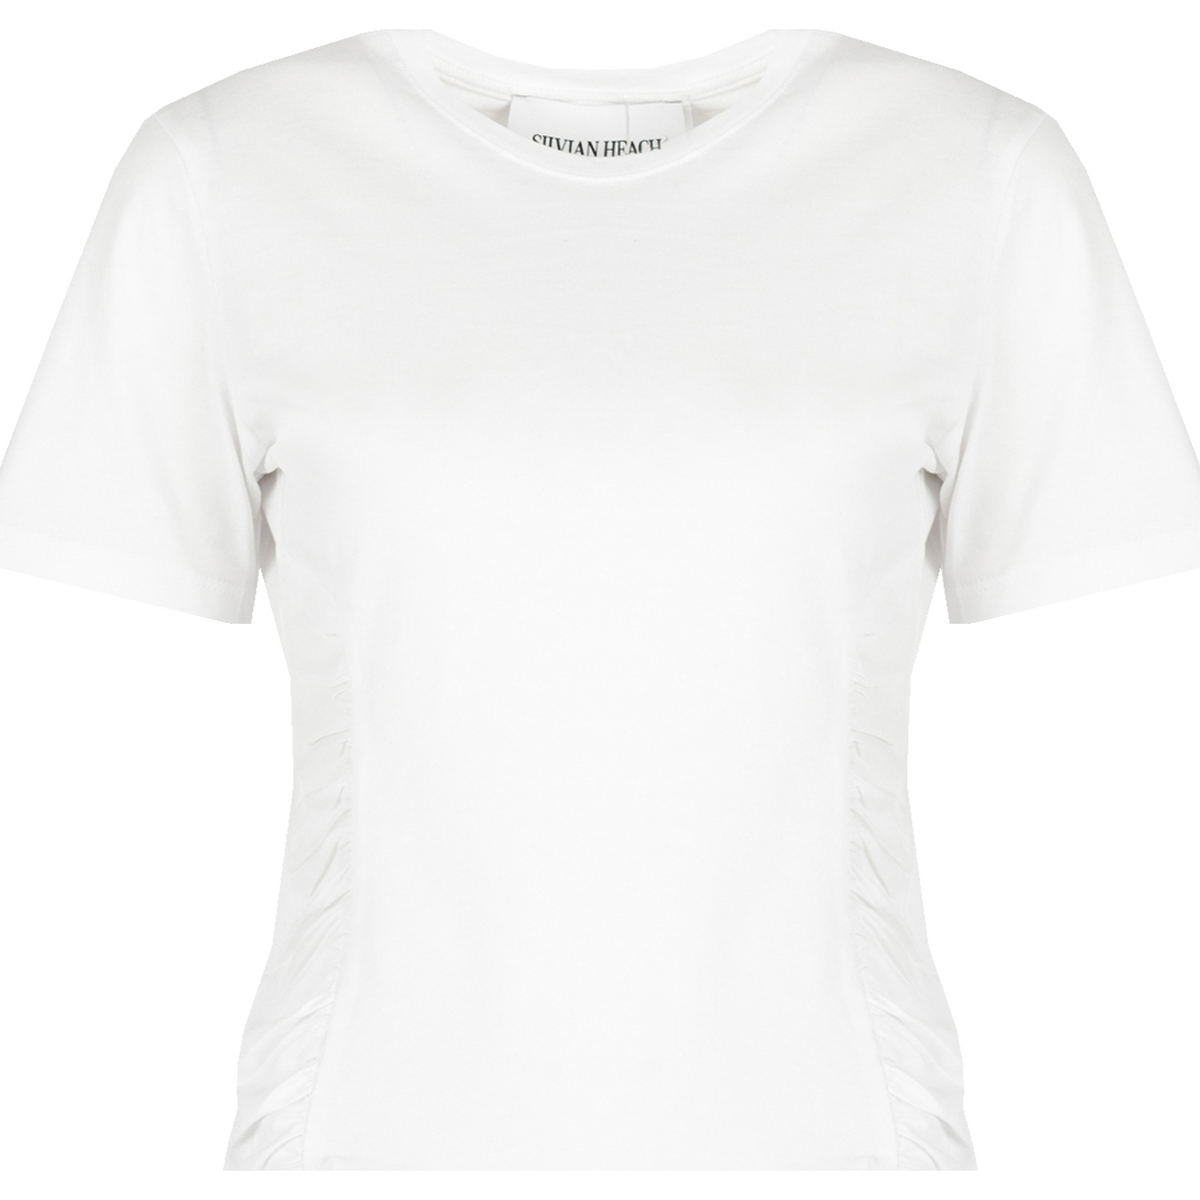 tekstylia Damskie T-shirty z krótkim rękawem Silvian Heach CVP23123TS Biały